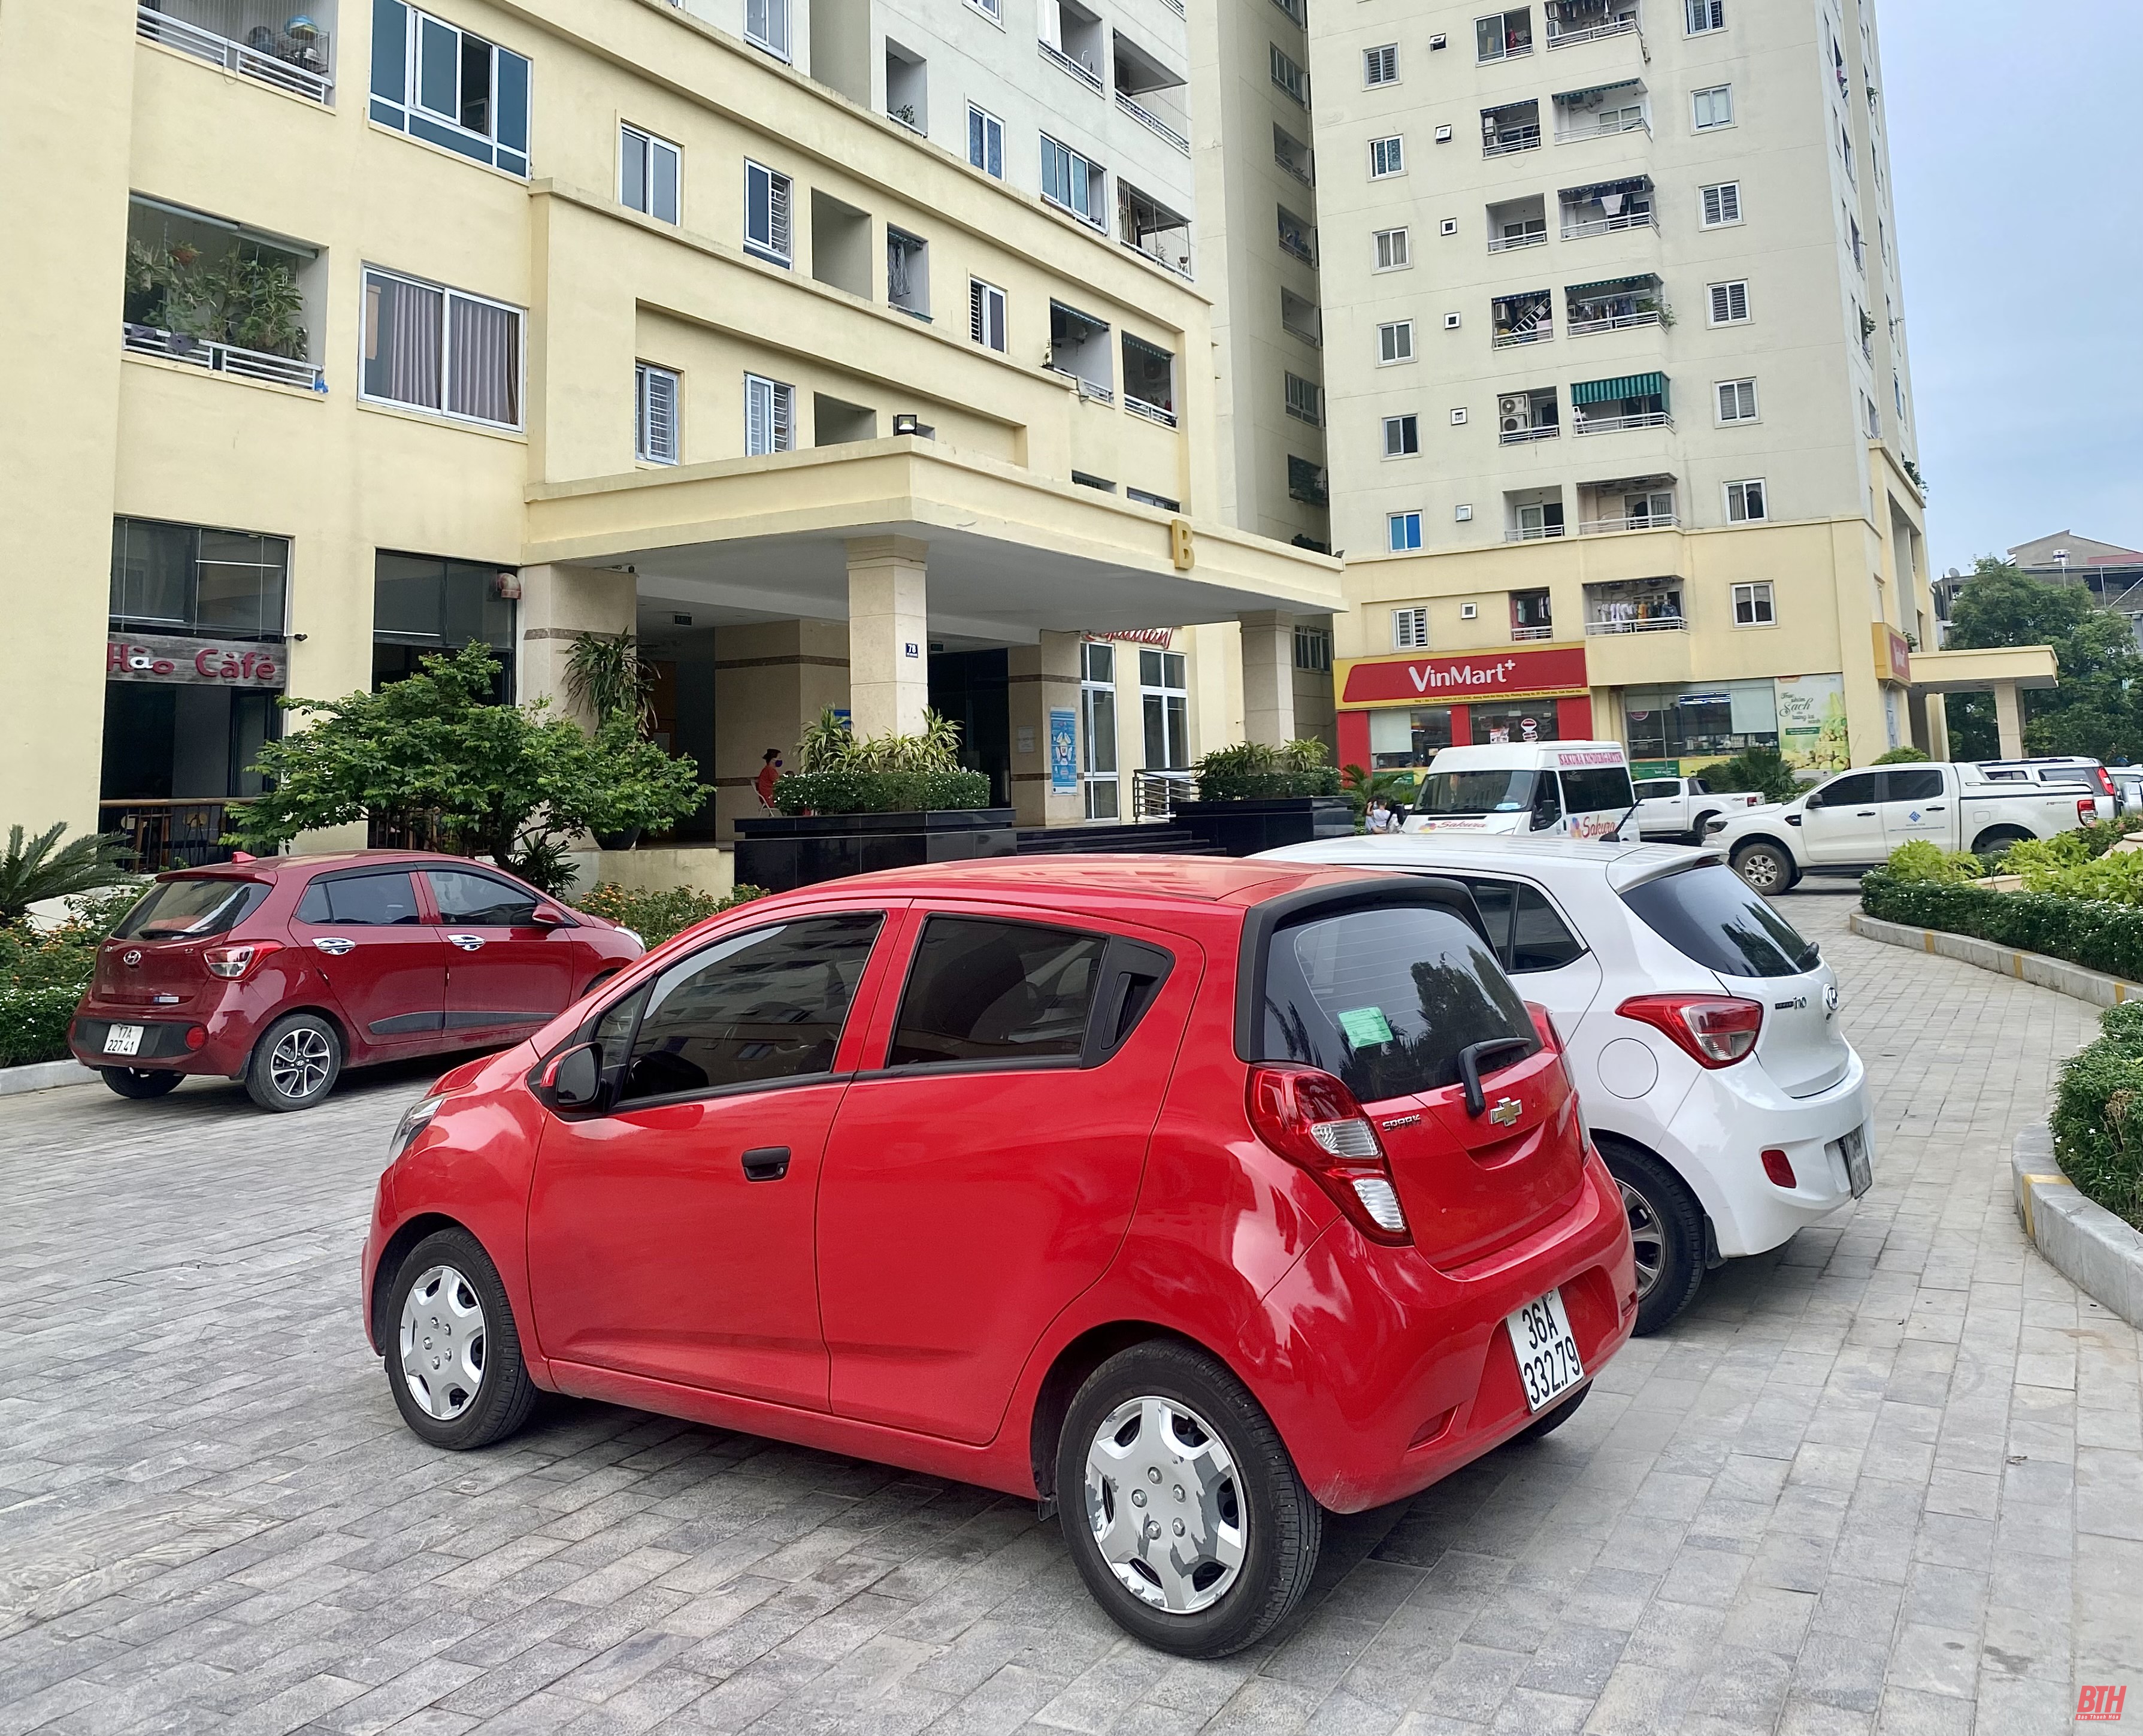 TP Thanh Hóa: “Đói” chỗ để xe tại các khu chung cư